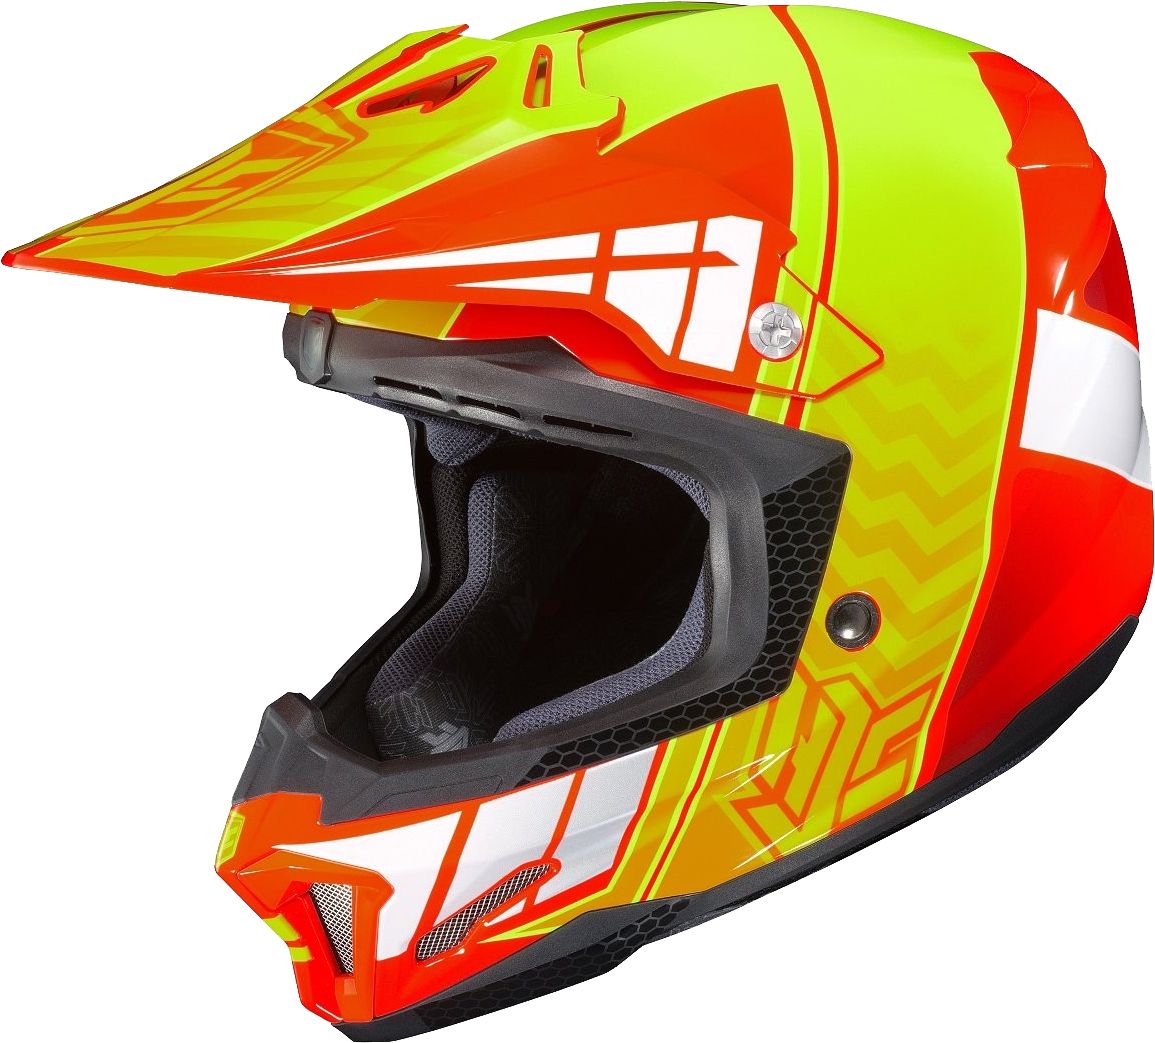 Motorcycle helmet PNG image, moto helmet    图片编号:9659